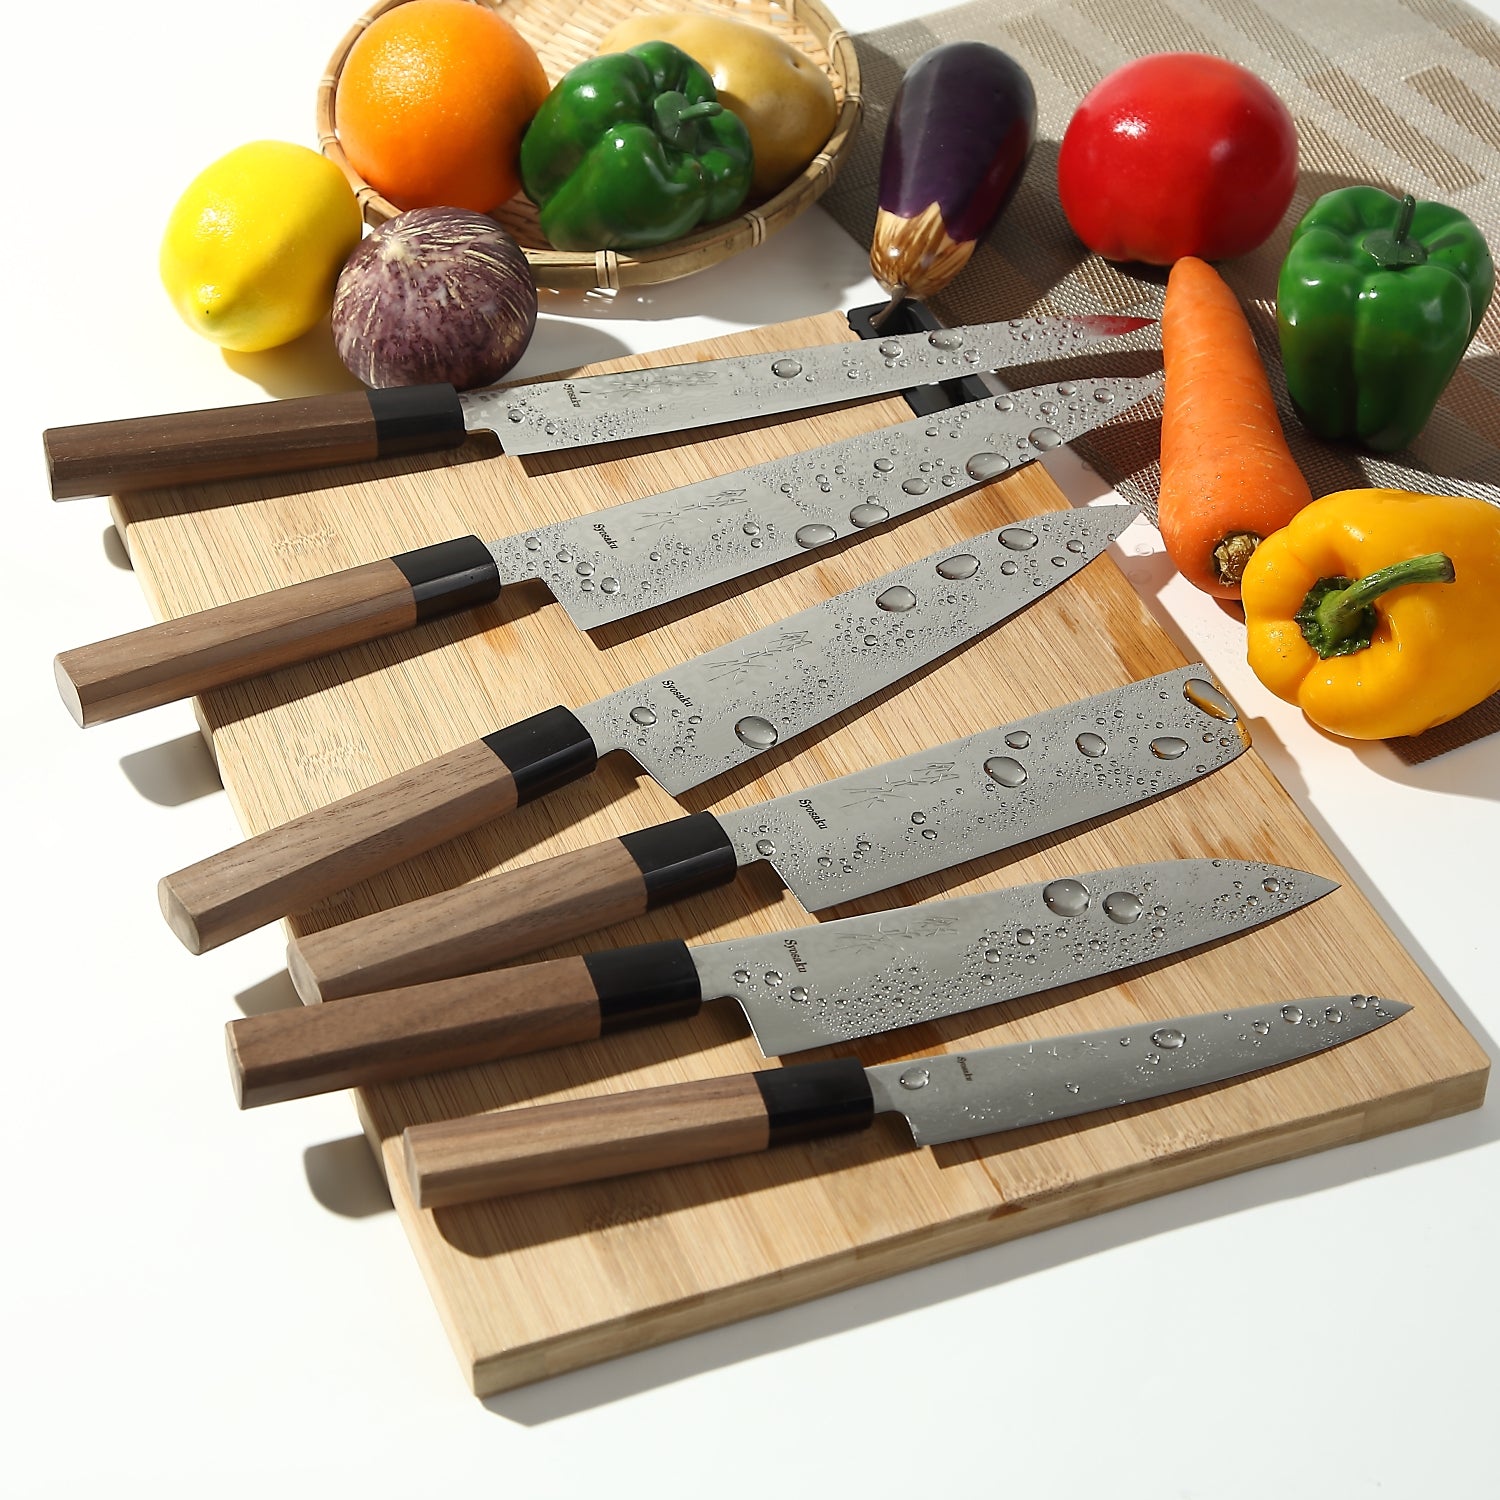 Gold Knife Set with Walnut Knife Block, 13-Piece Kitchen Knives